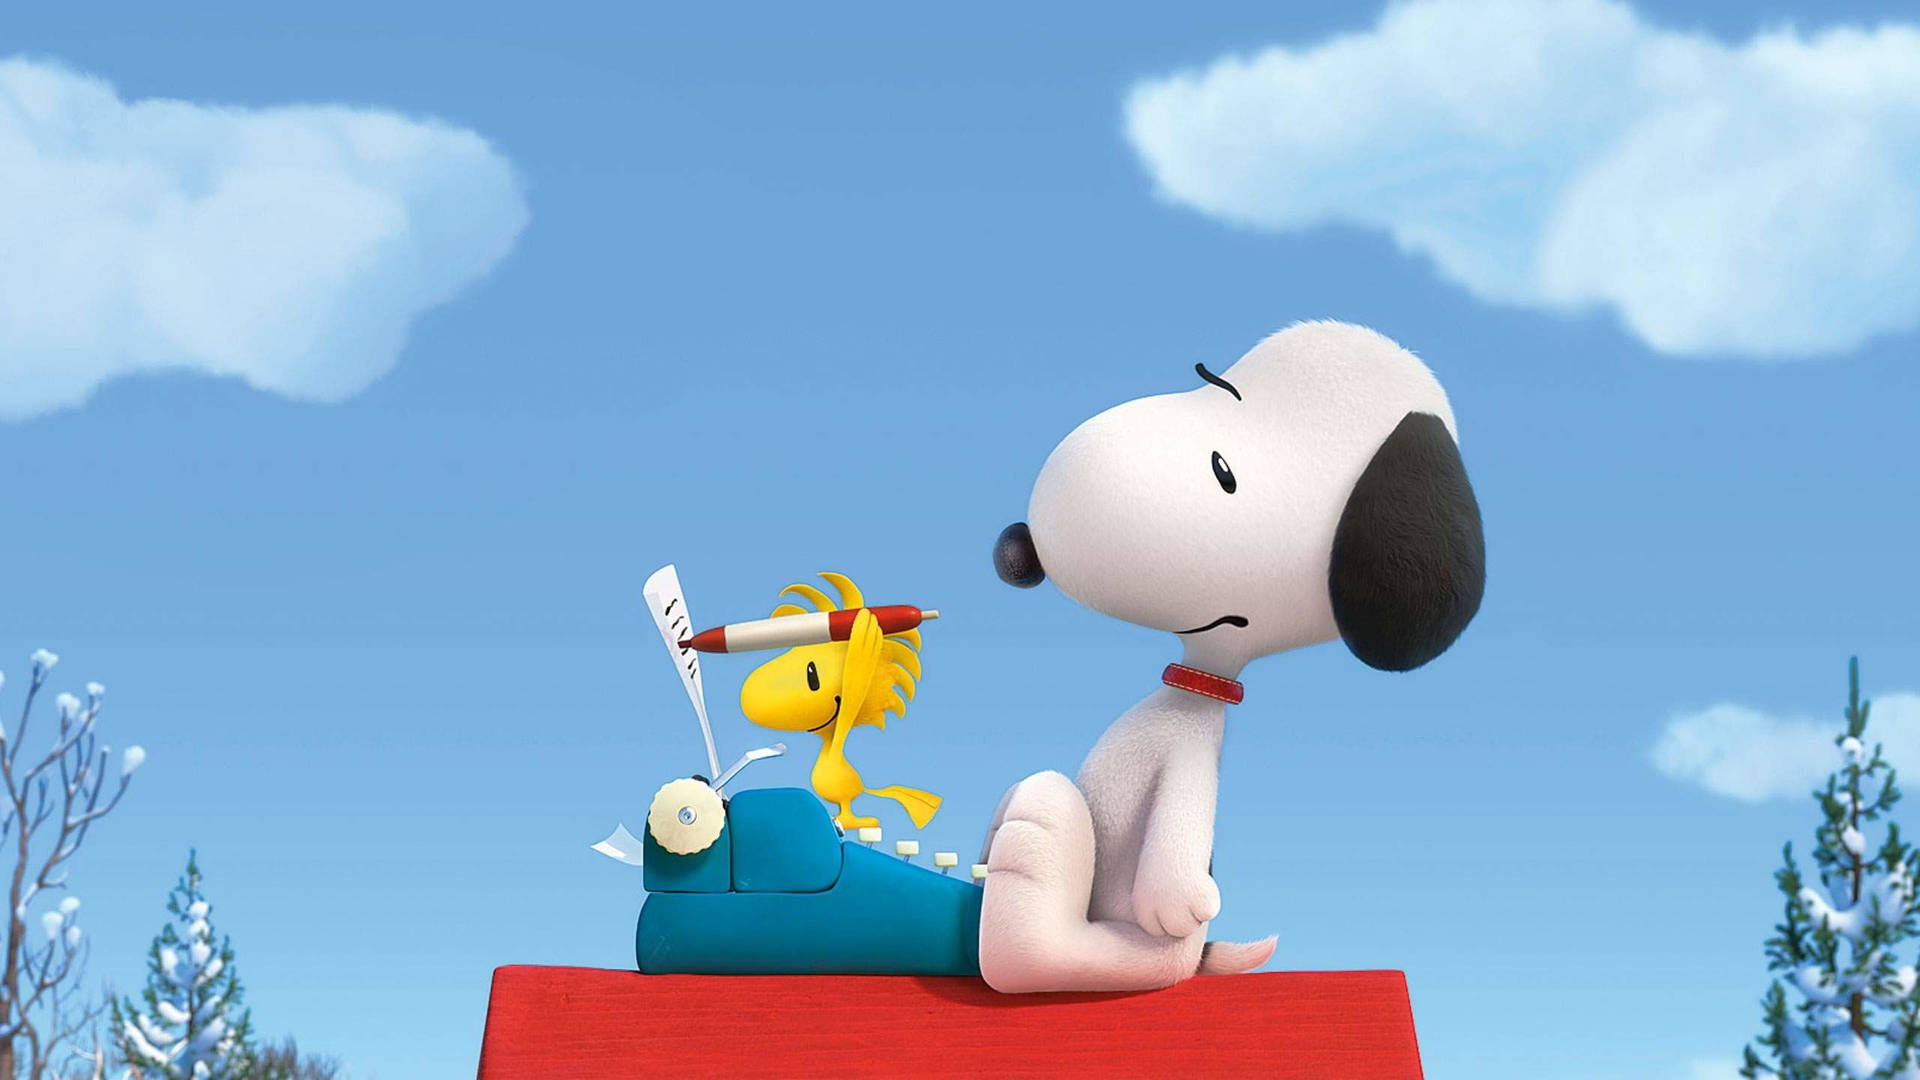 Snoopy og Woodstock skriver Peanuts filmen gennem et regnvejr. Wallpaper